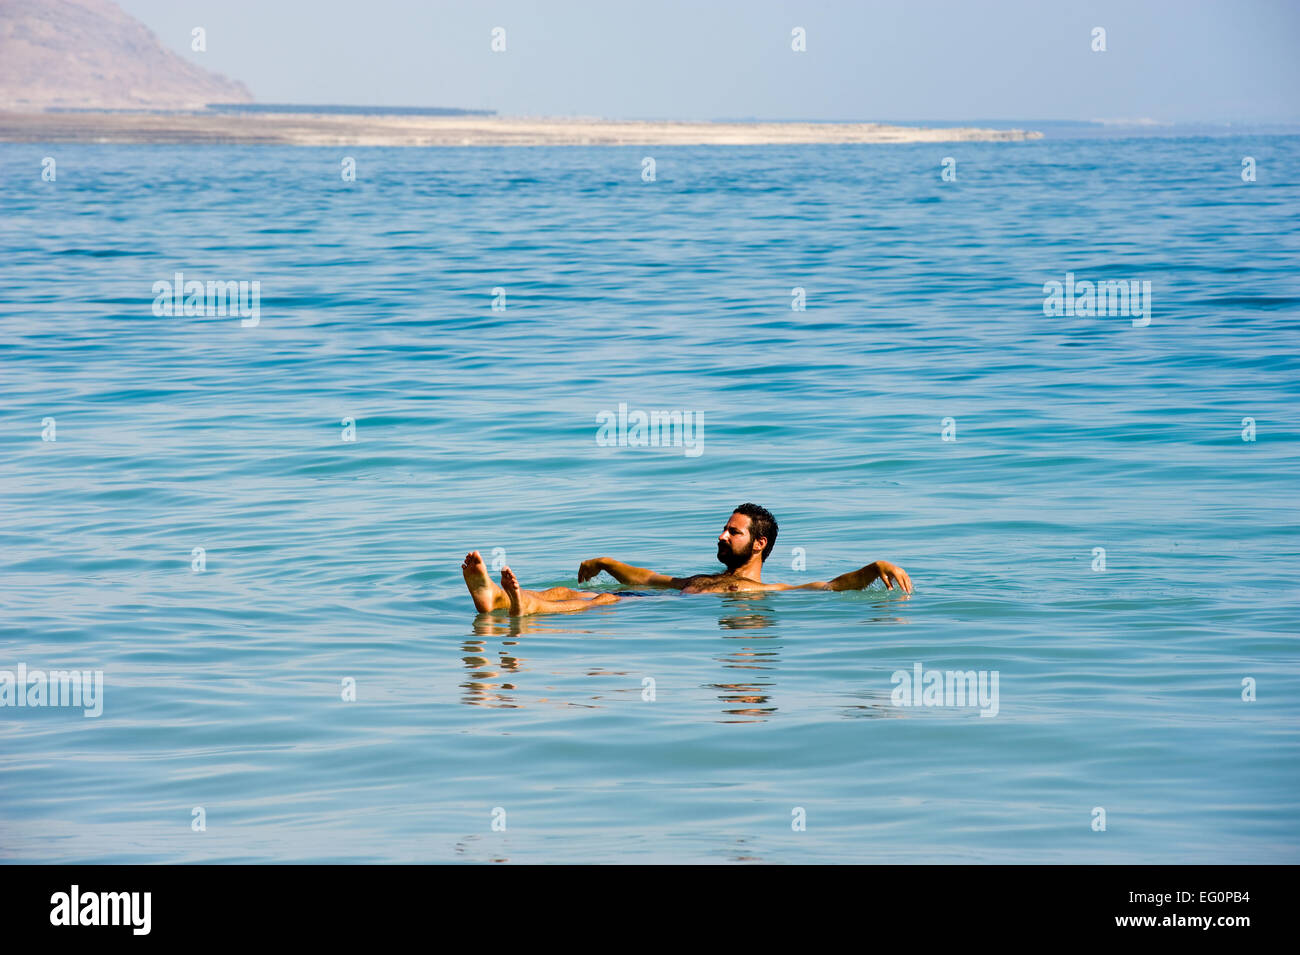 Mar Morto; Israele - 16 ottobre, 2014: un uomo galleggiante in acqua salata del Mar Morto in Israele Foto Stock